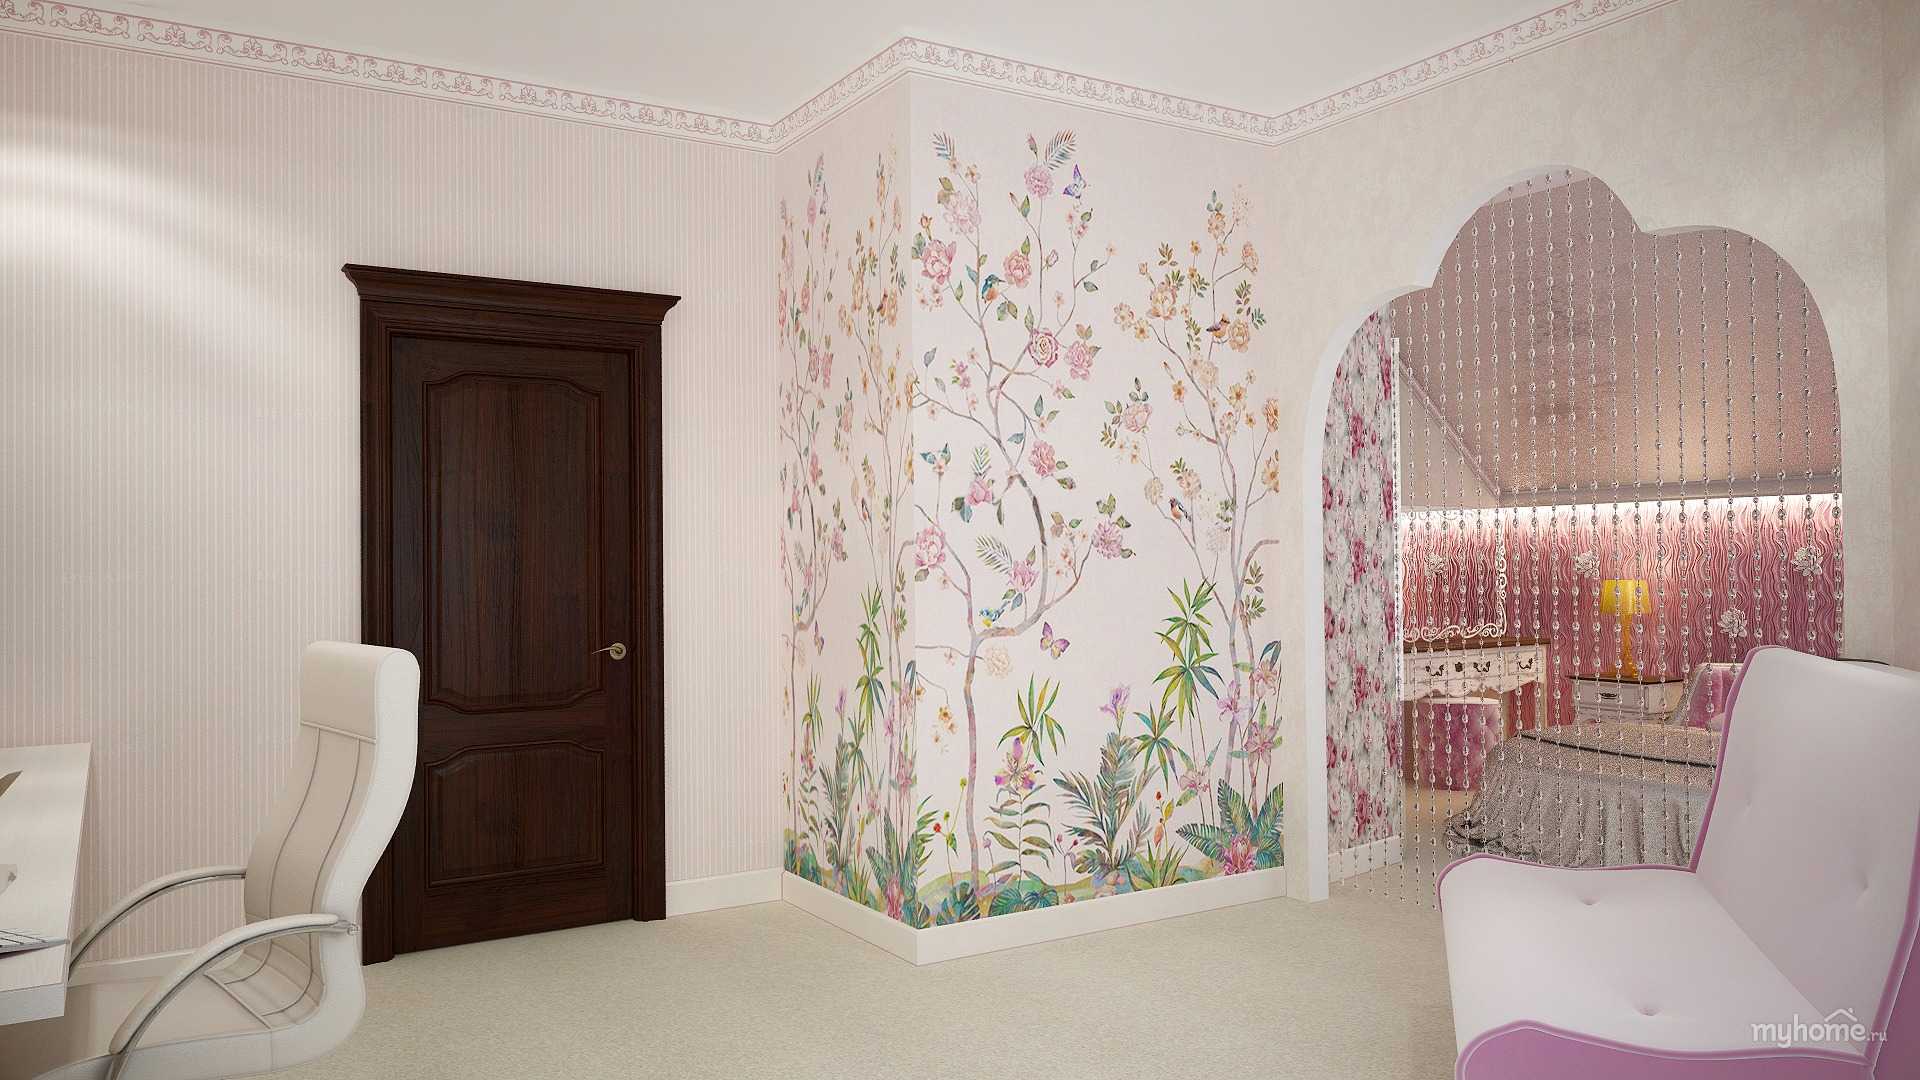 Розовые обои: особенности данного покрытия Возможные варианты оттенков Гармоничные сочетания с другими цветами Стильный дизайн покрытий Розовые стены в разных помещениях